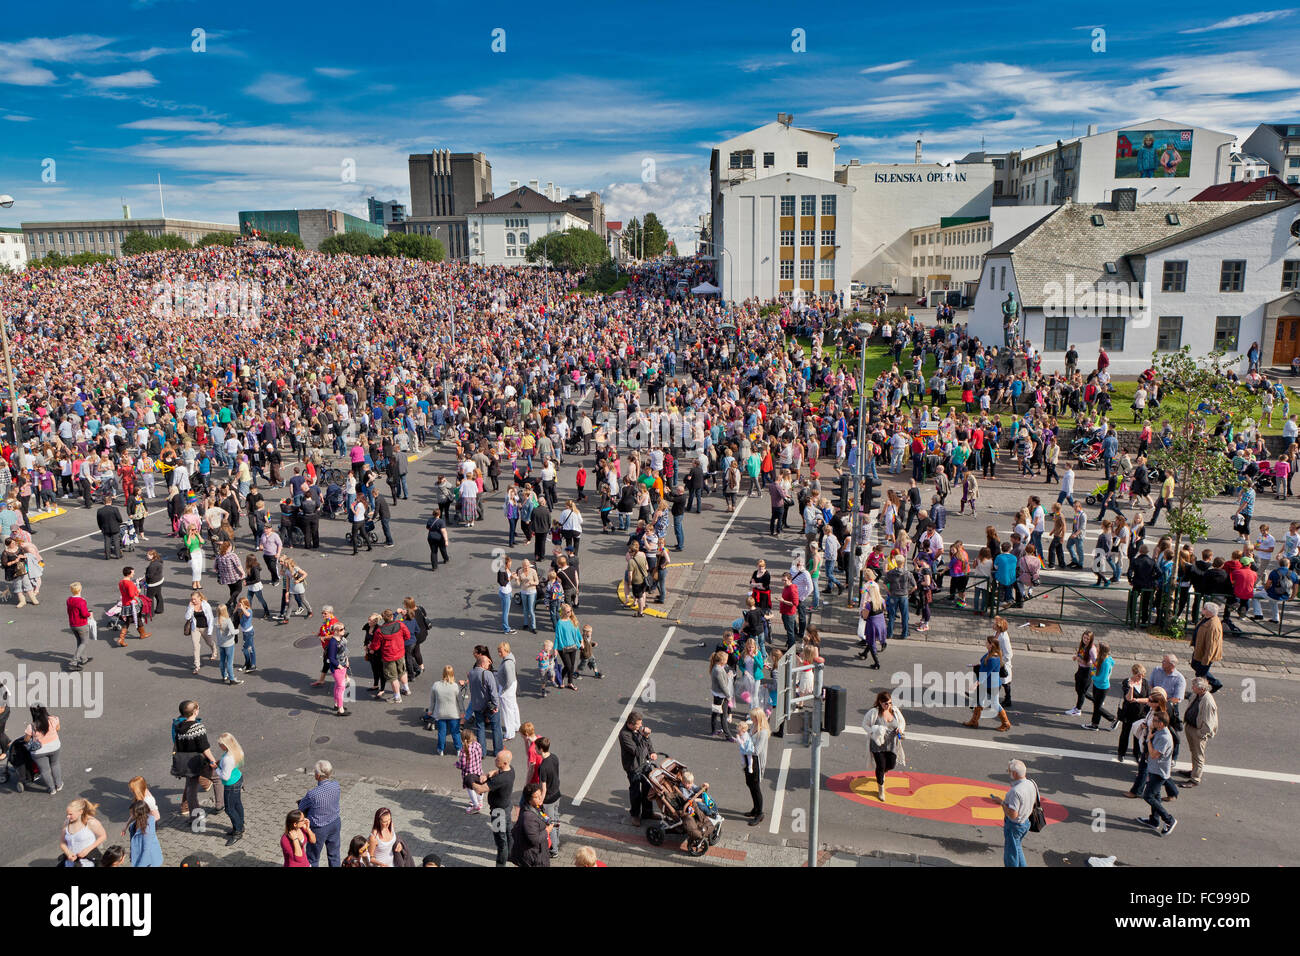 Crowds at Gay Pride, Reykjavik, Iceland Stock Photo